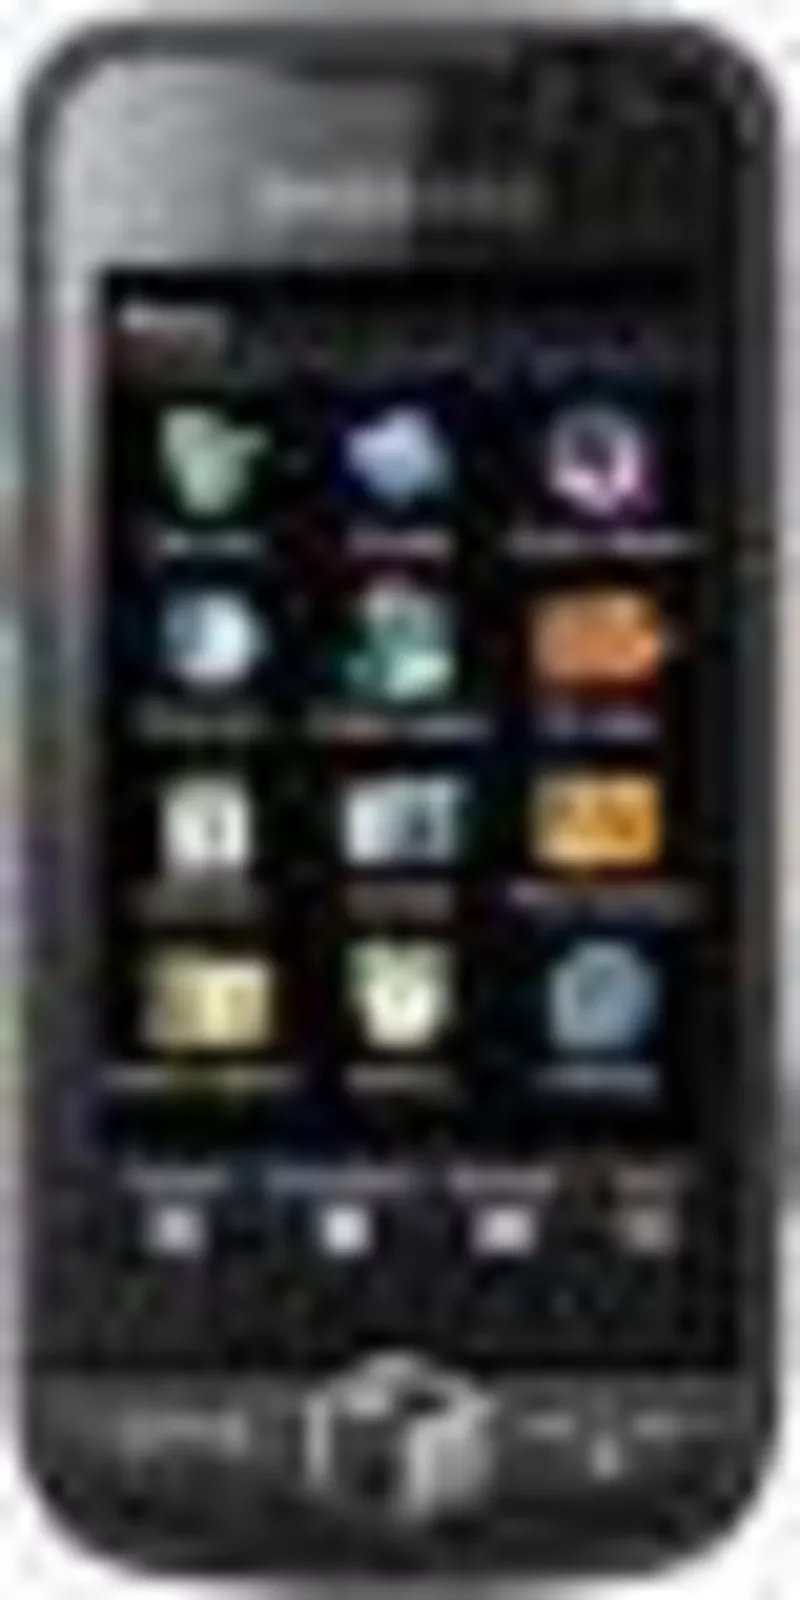 Новый,  2 сим – Sony Ericsson С8000  черный,  Цветное ТВ